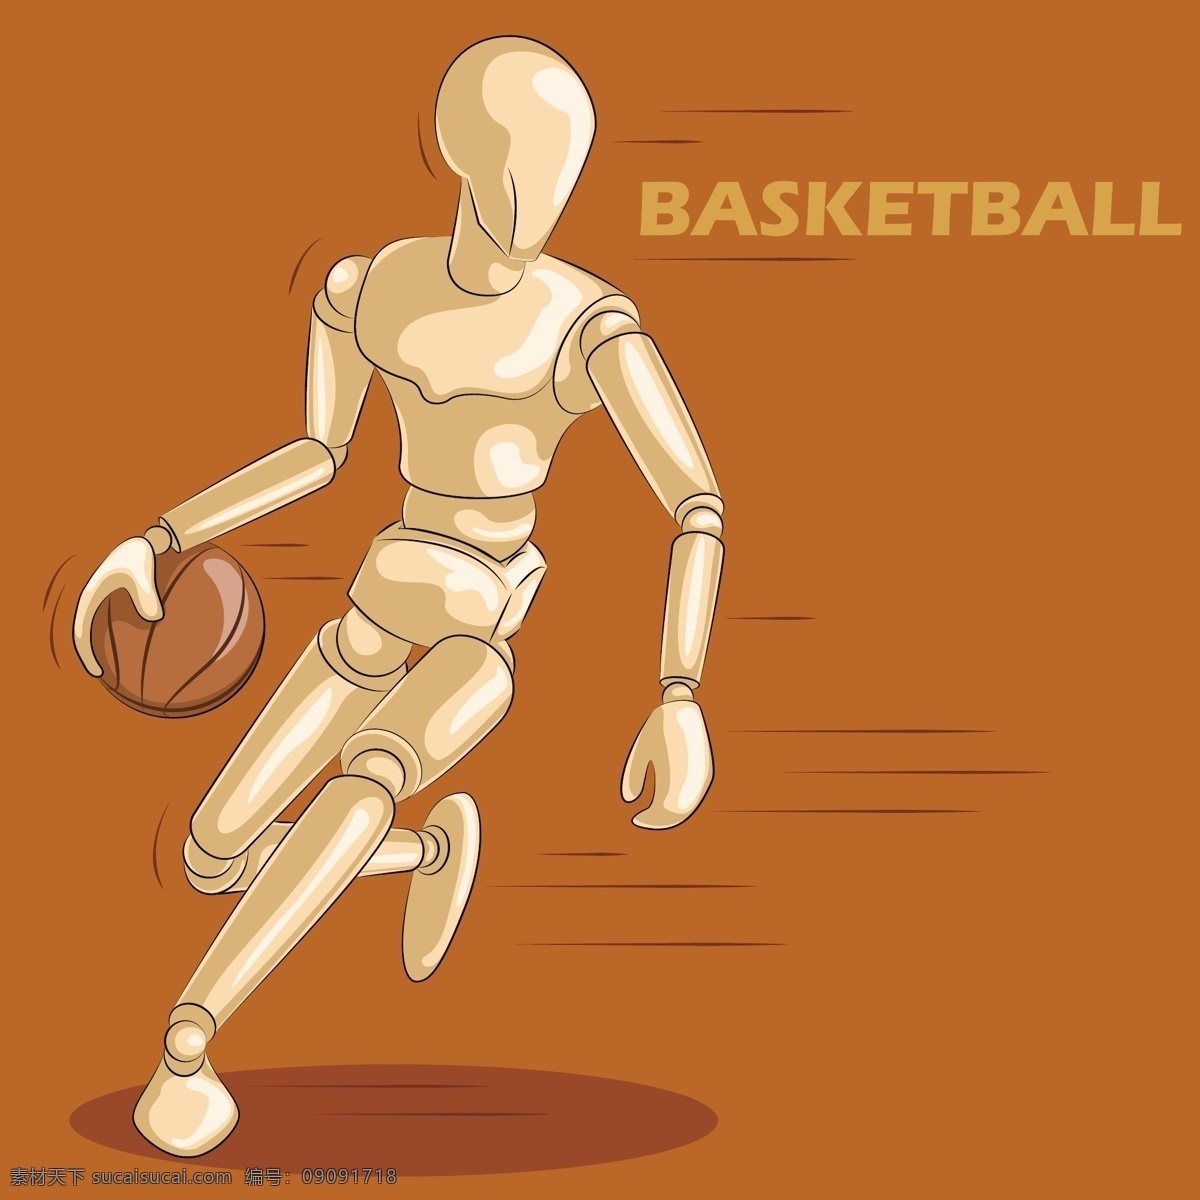 橙色 手绘 篮球 运动 卡通 矢量 名称 奔跑 矢量素材 平面素材